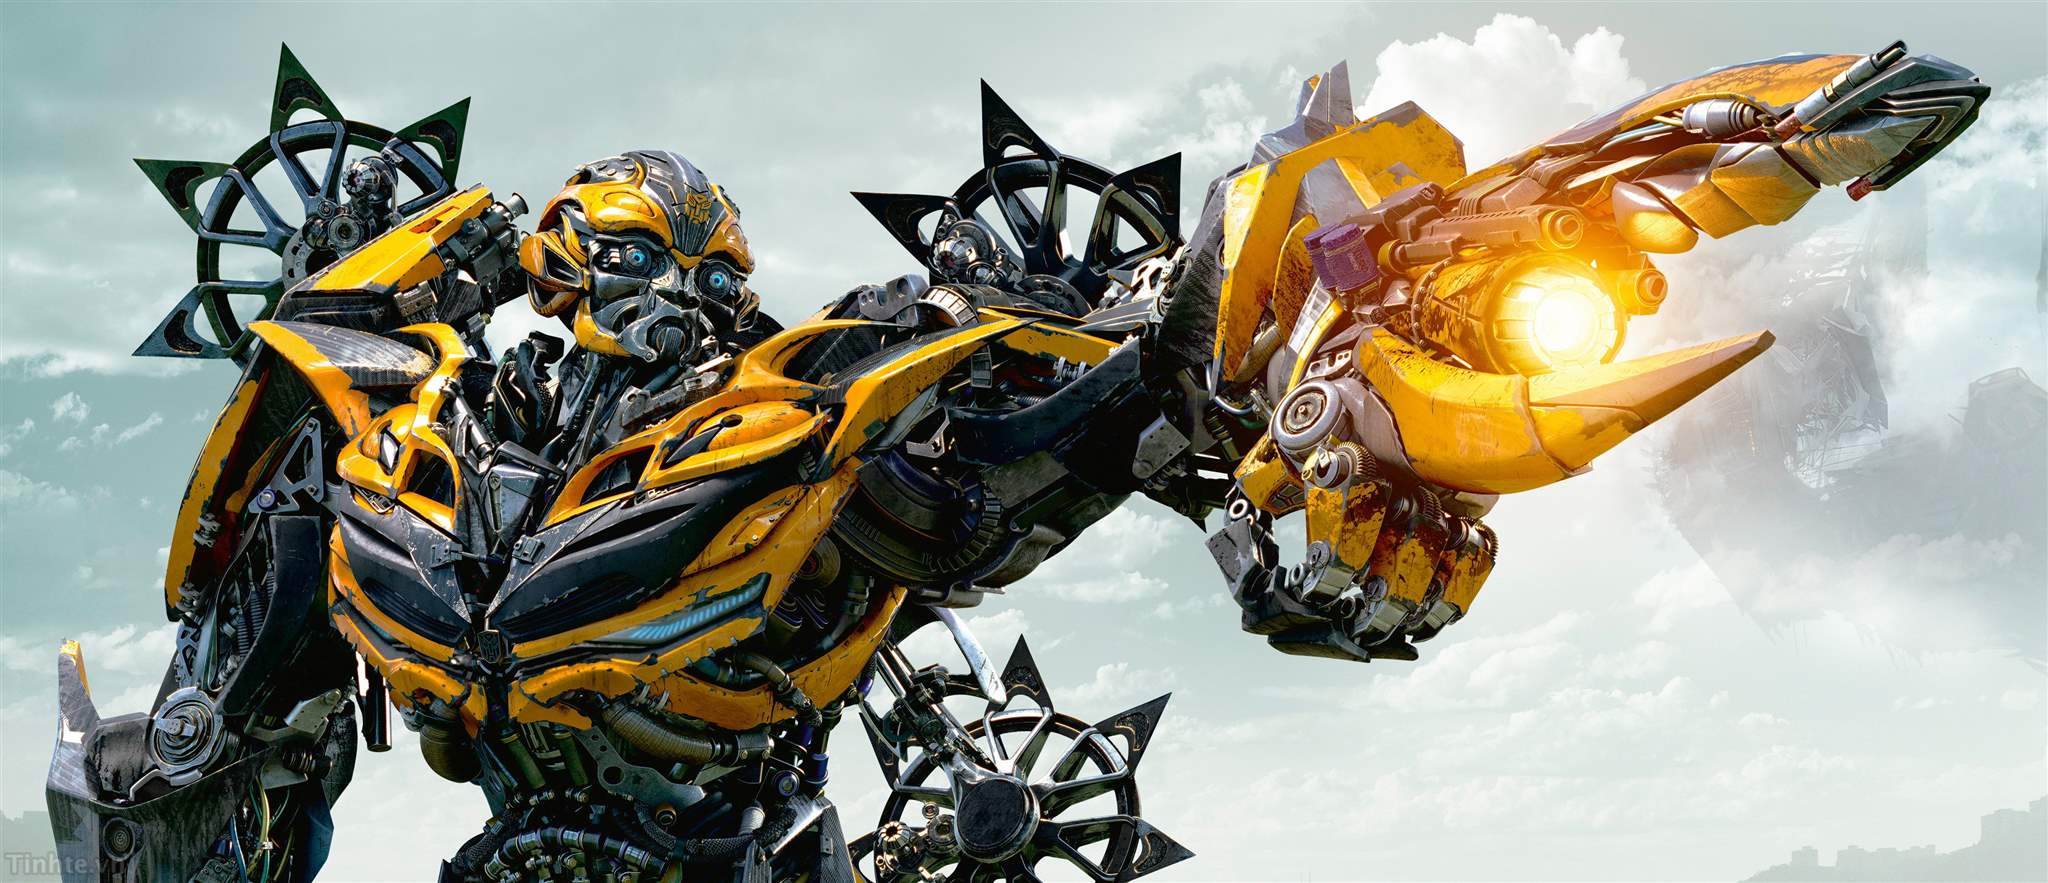 Autobot: Hình ảnh về Autobot sẽ khiến bạn say mê với những chiến binh cyborg siêu đẳng, chống lại thế lực nguy hiểm của Decepticon.